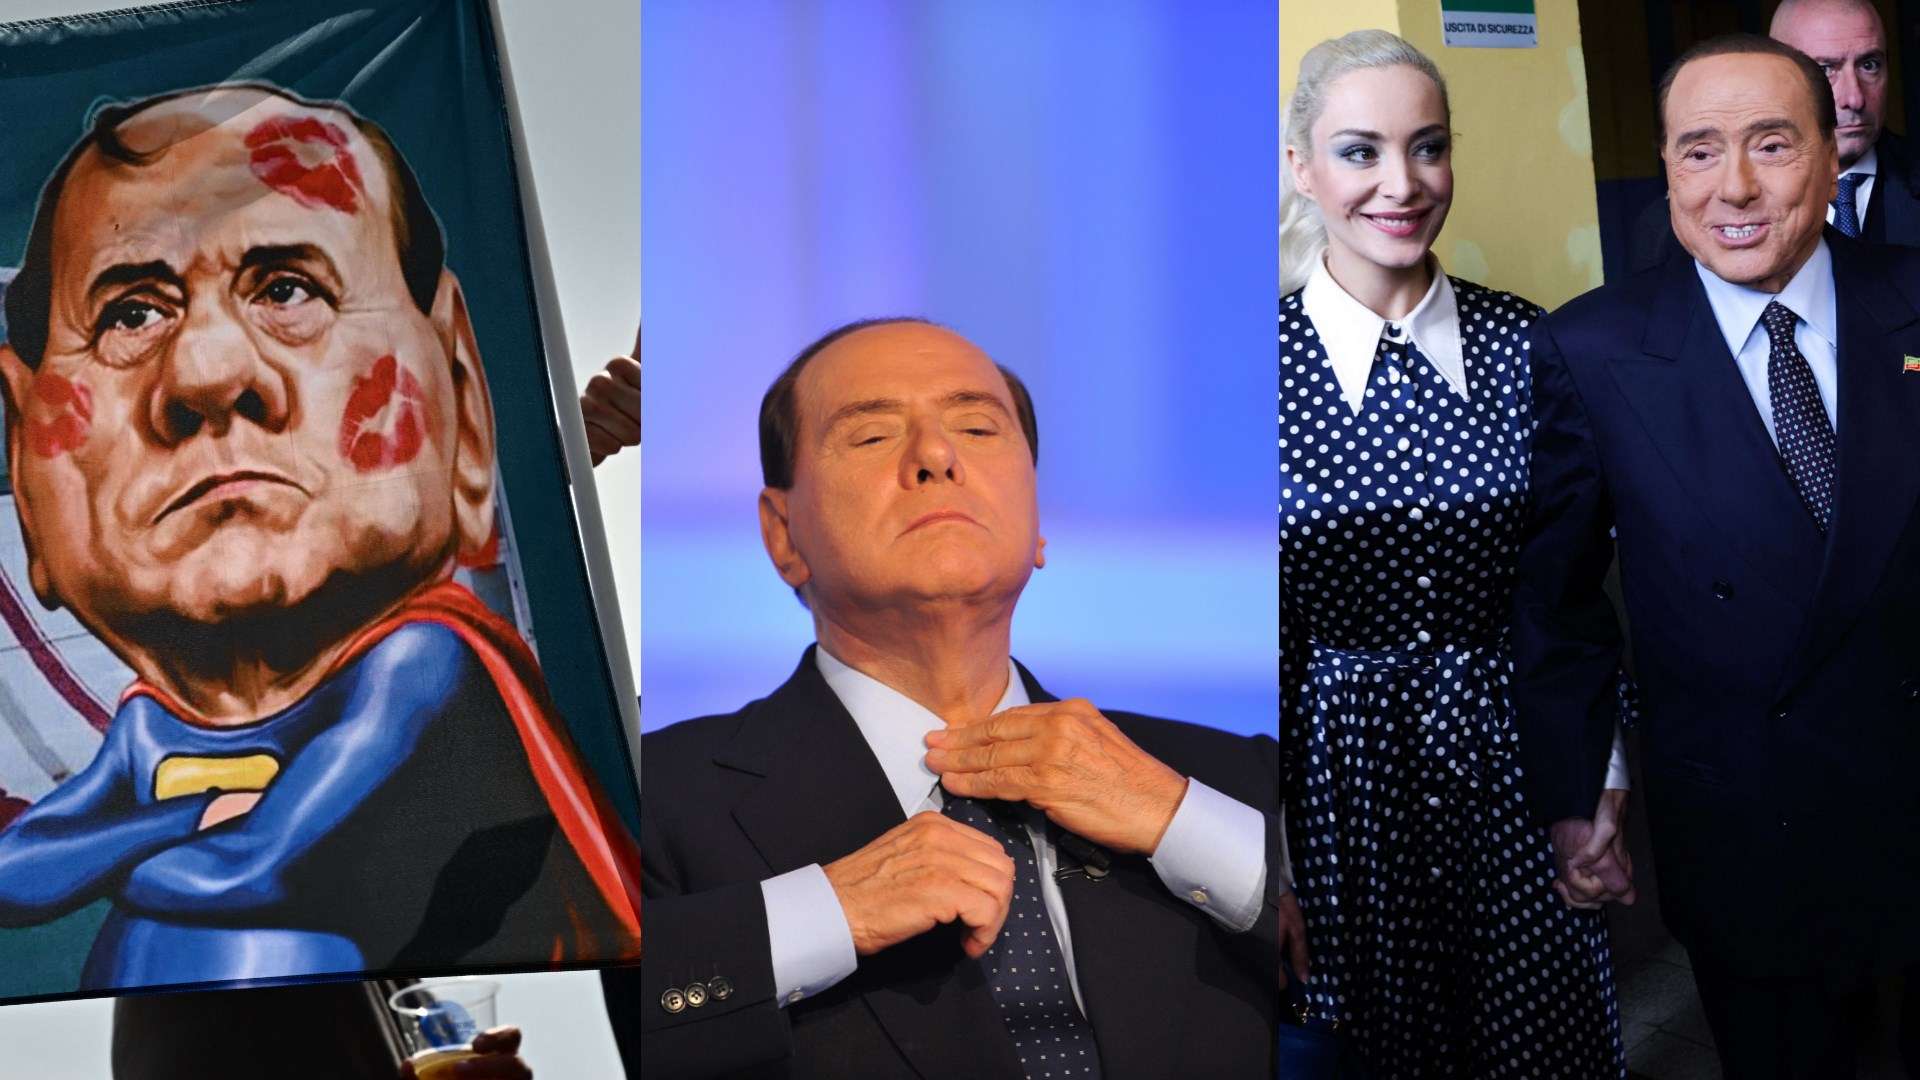 Silvio Berlusconi Gfx